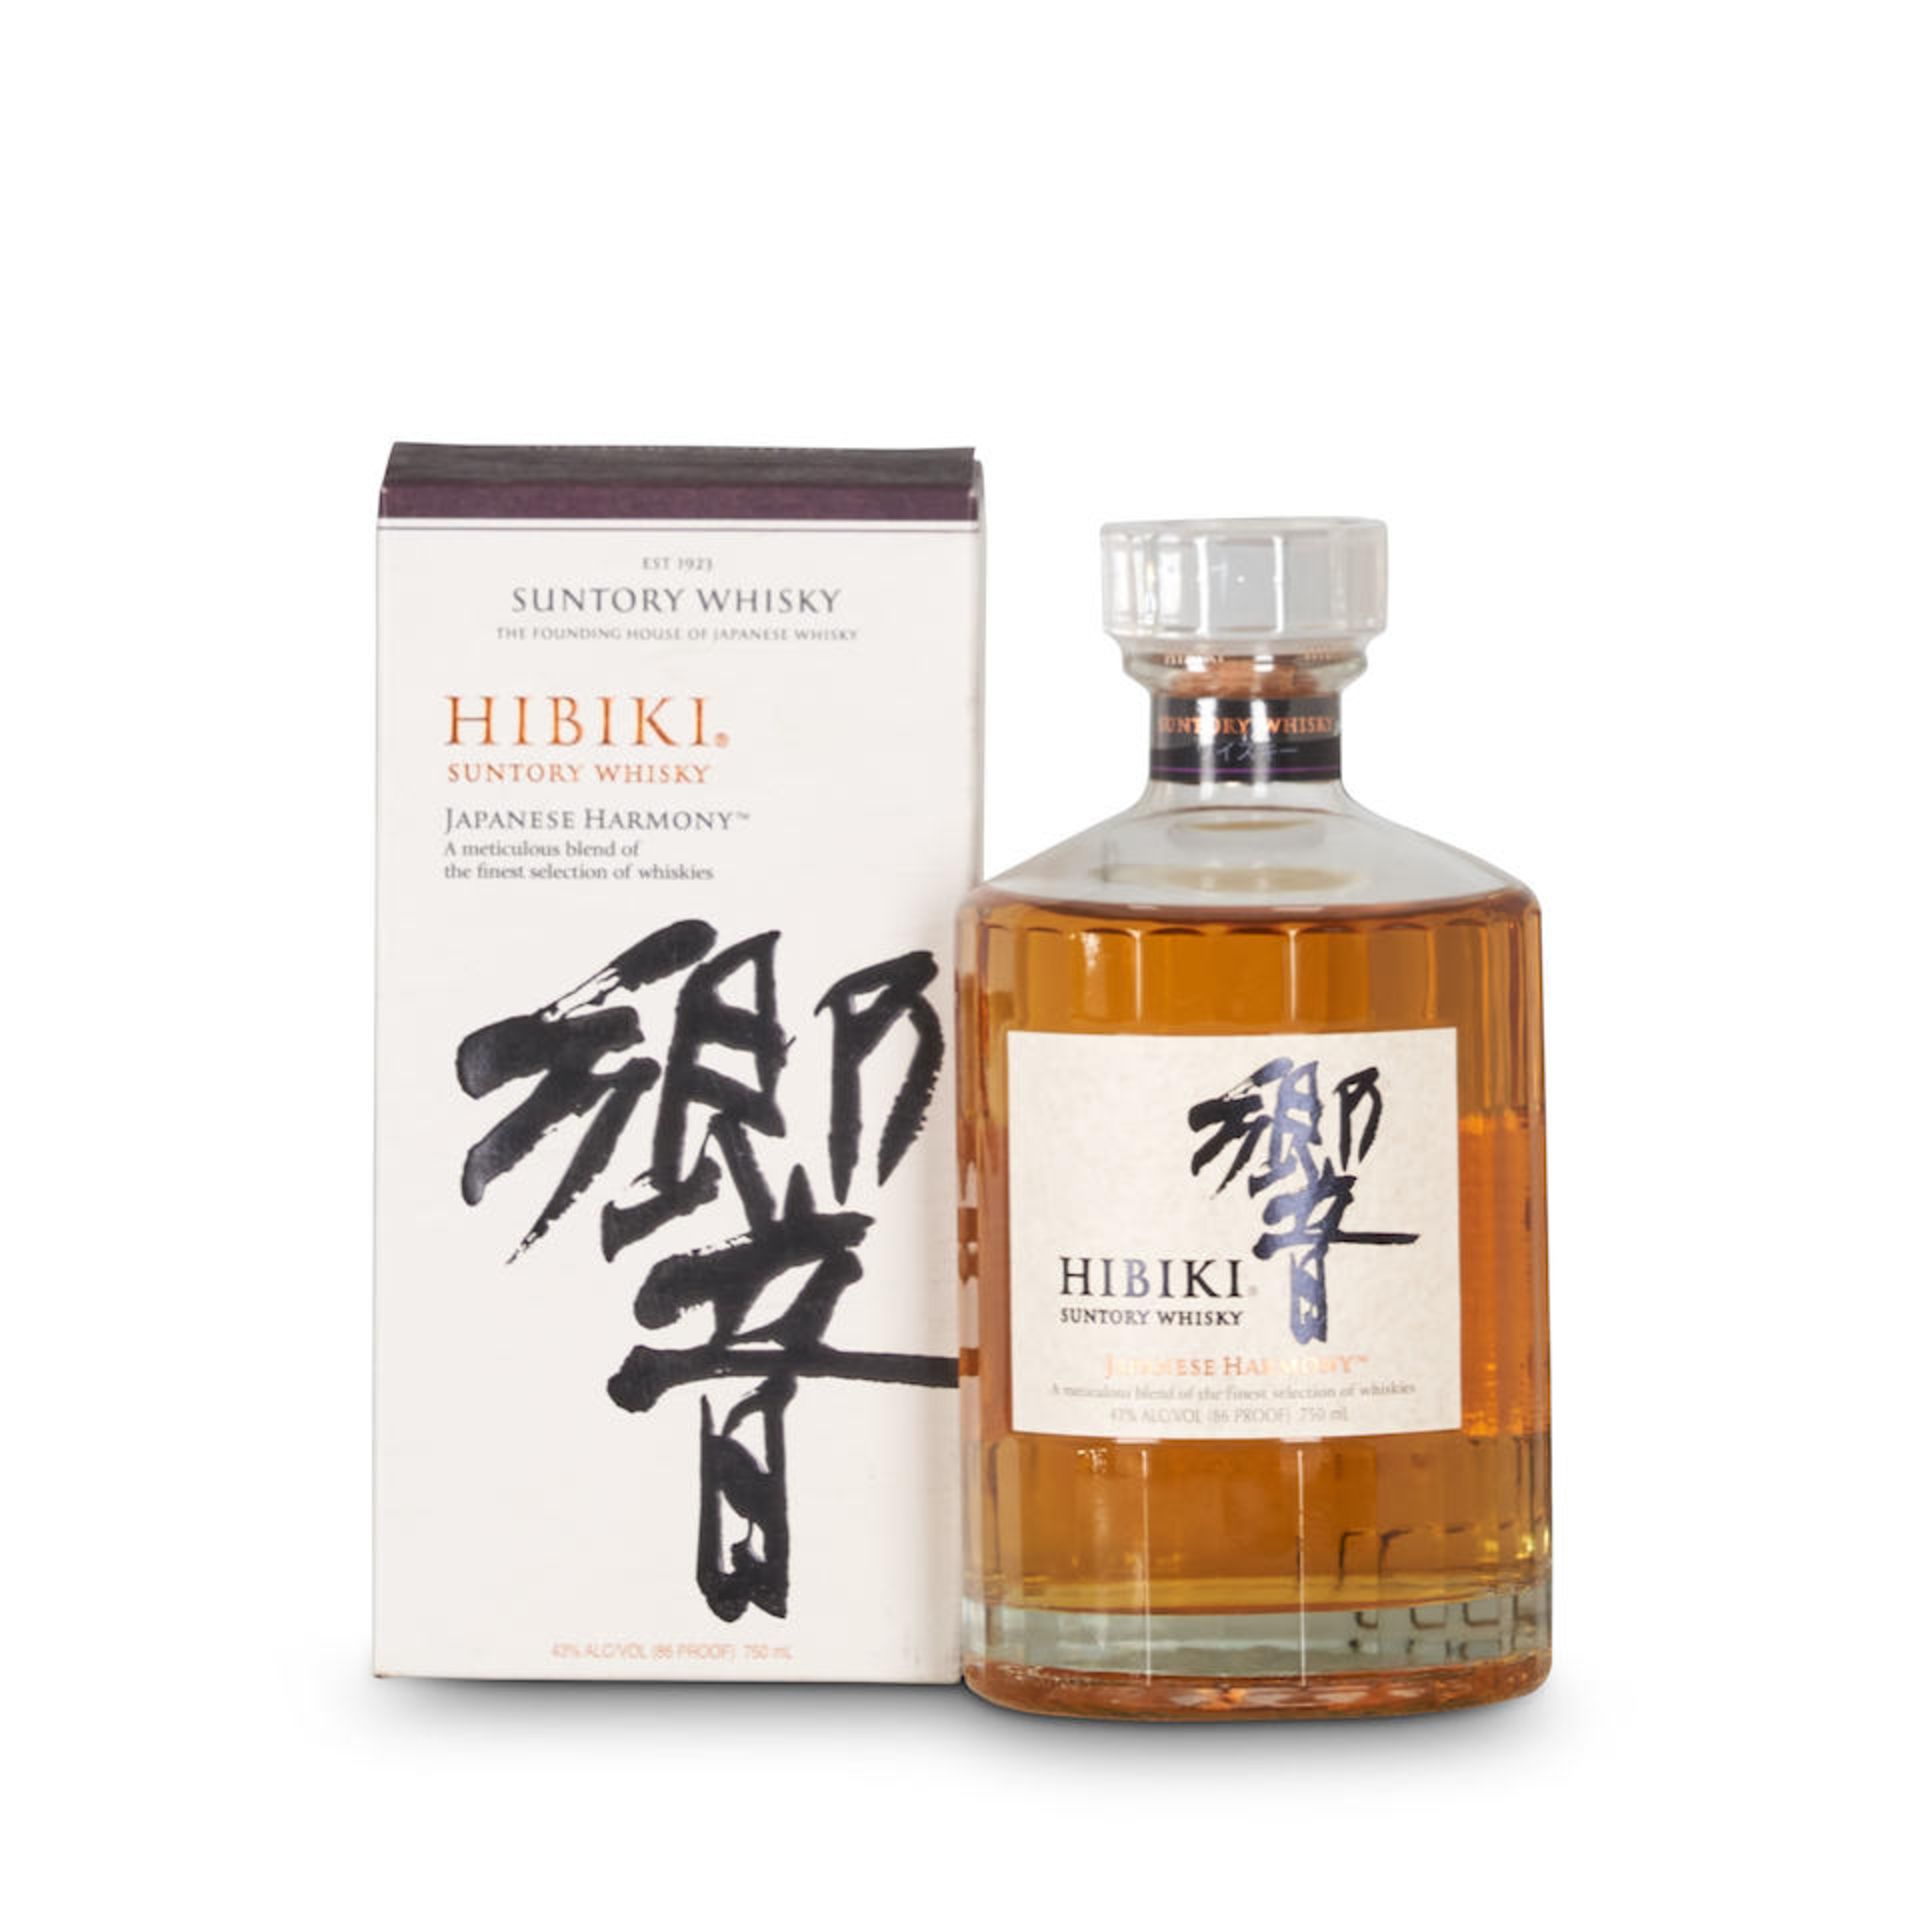 Hibiki Suntory (1 750ml bottle)